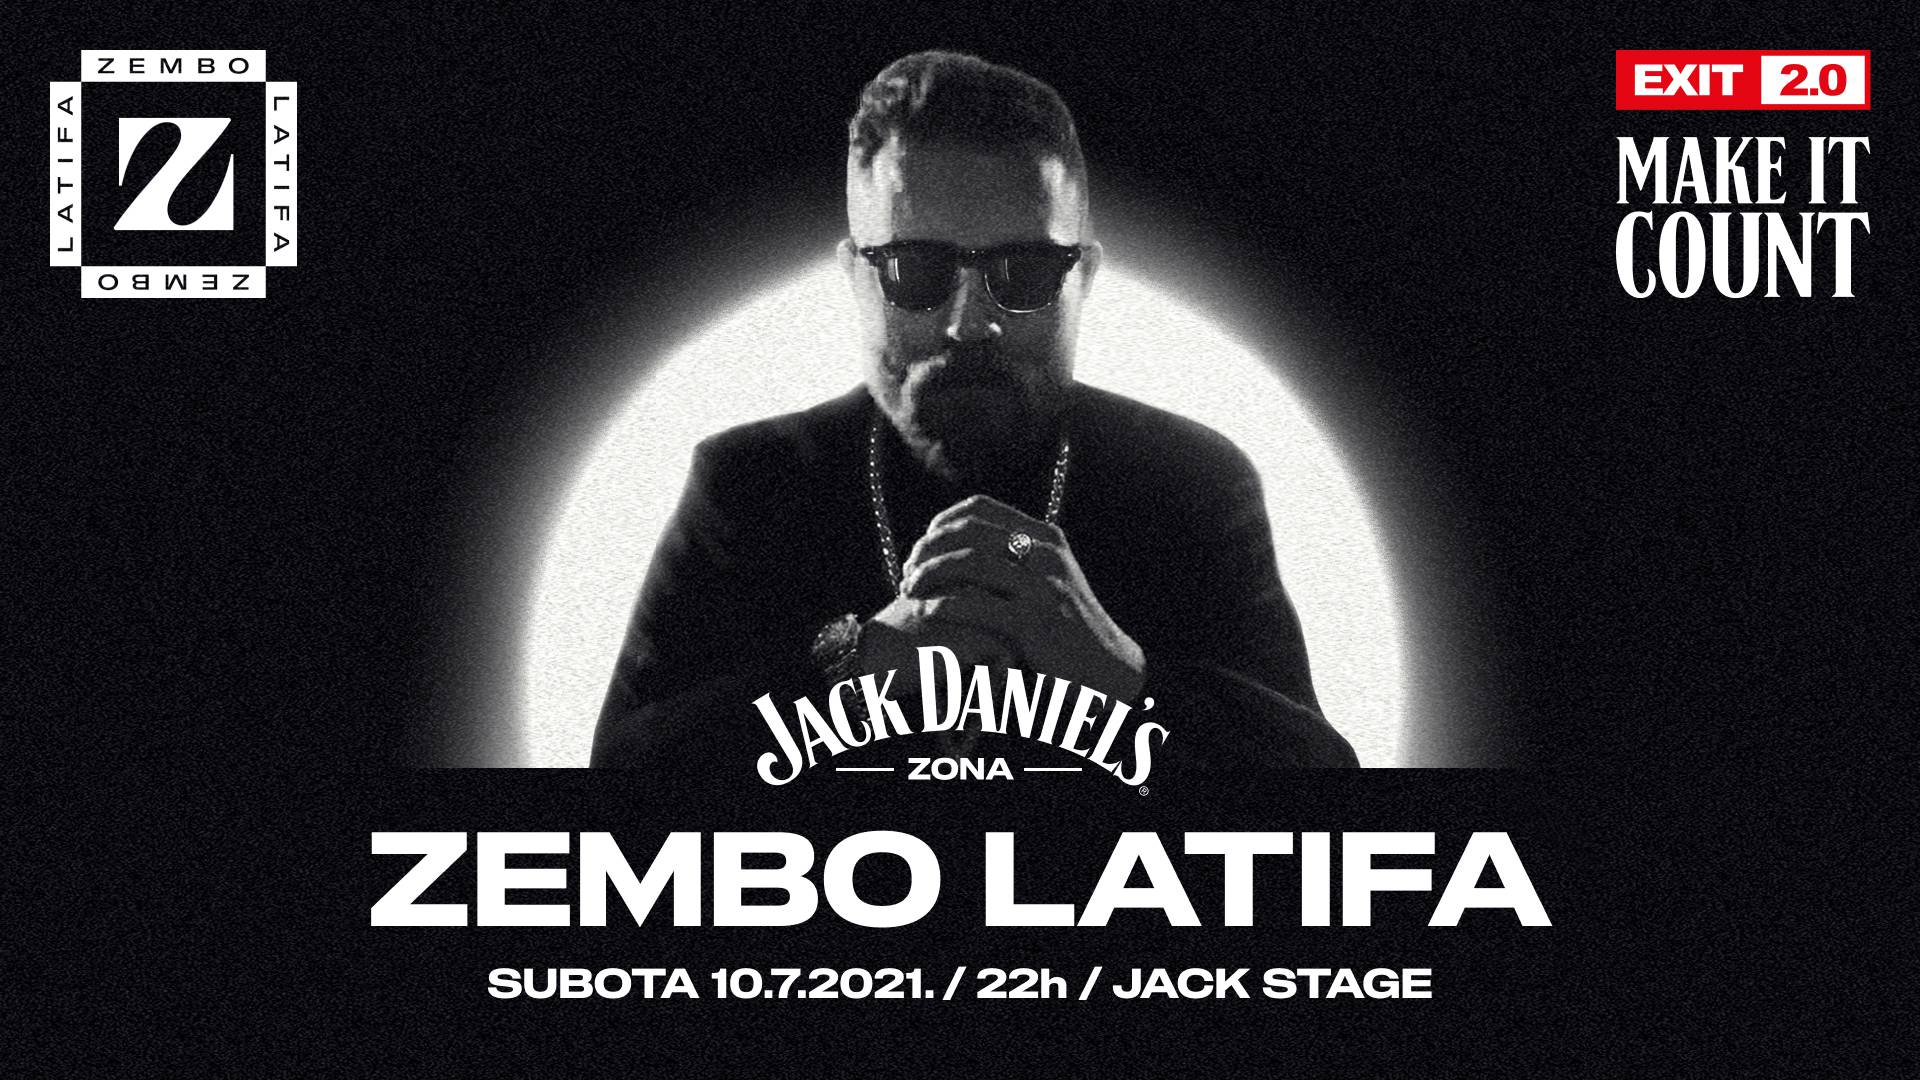 Zembo Latifa 10.07. nastupa na jednom  od najvećih svjetskih festivala Exit-u!